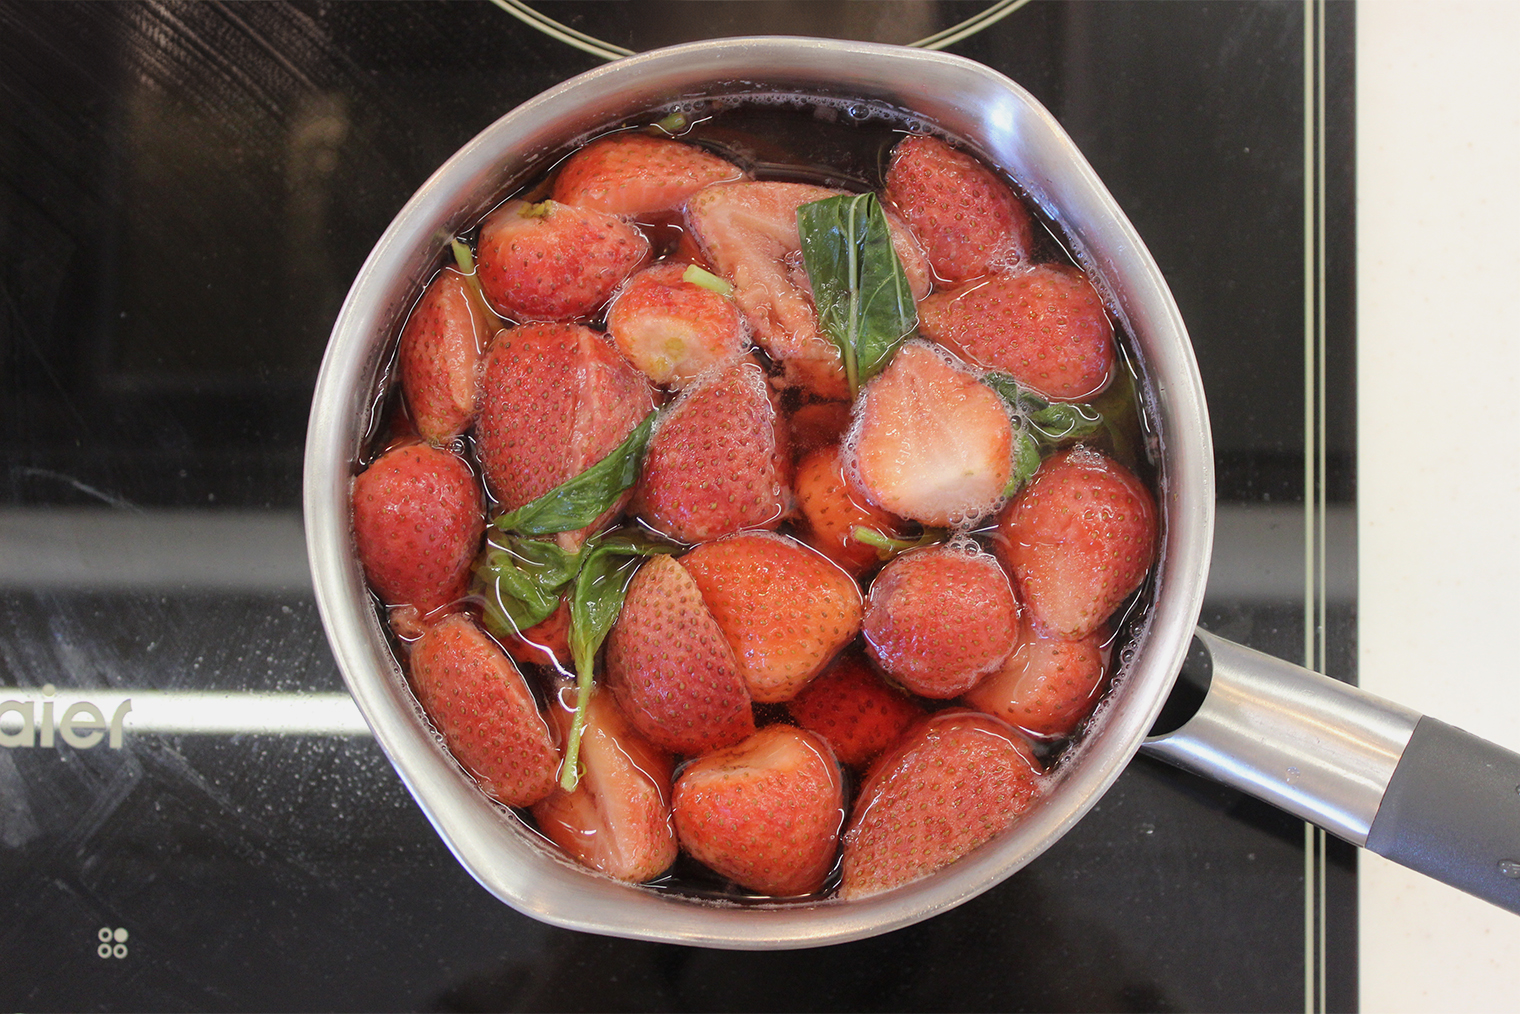 После кипения ягоды и базилик потускнеют, так как отдадут цвет и аромат жидкости